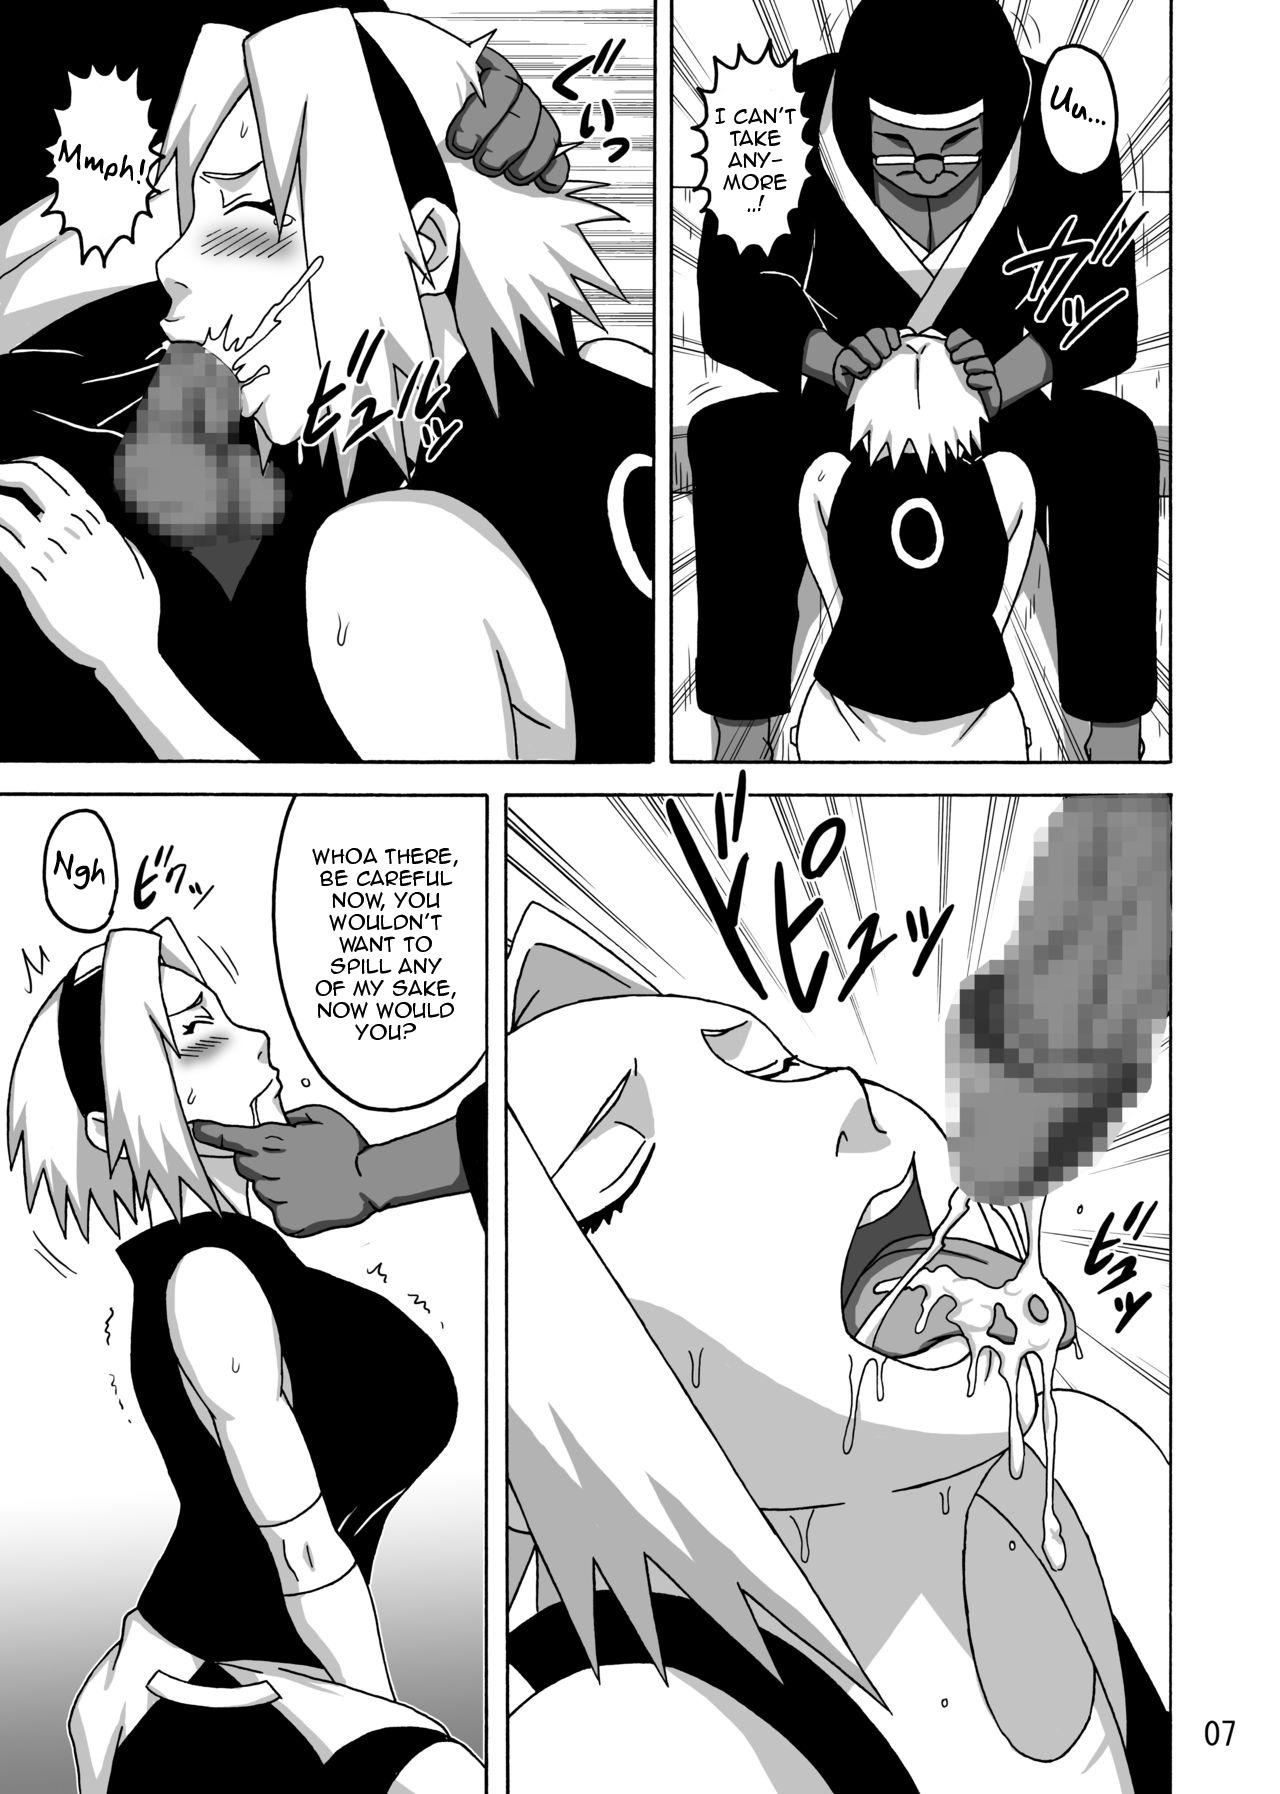 sexymanga:  Naruto Sakura x Hinata threesome part 1